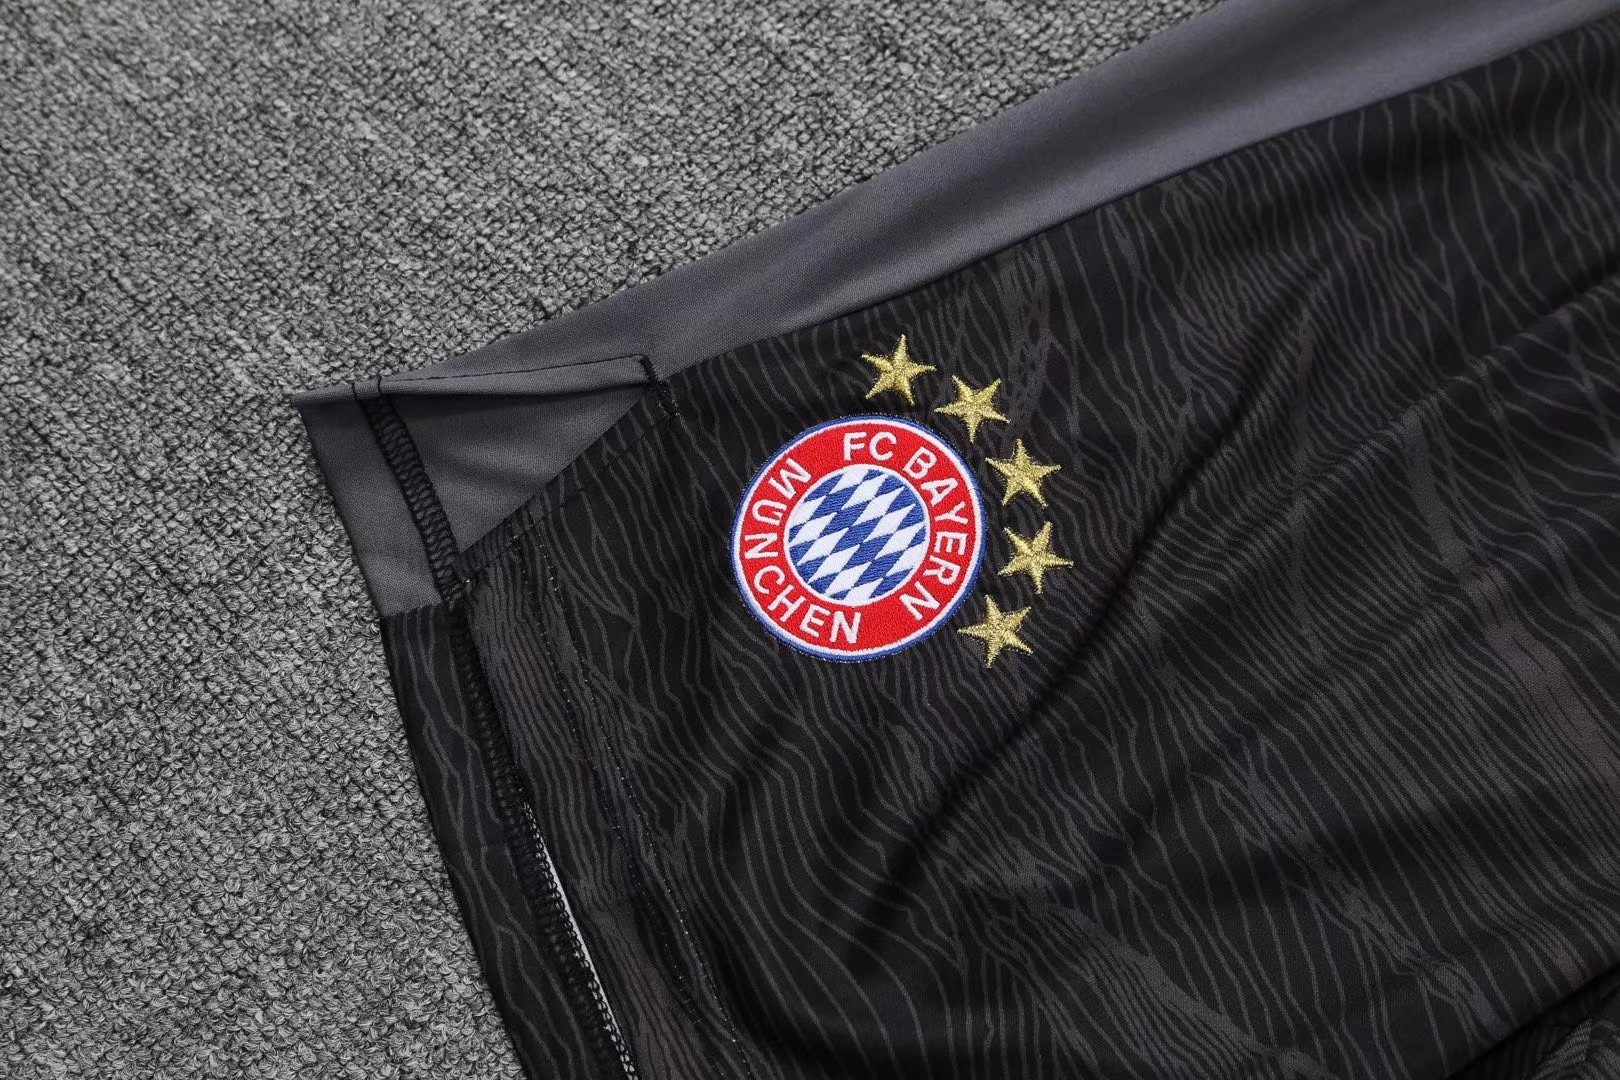 Bayern Munich Soccer Jersey + Short Set Replica Goalkeeper Black Mens 2021/22